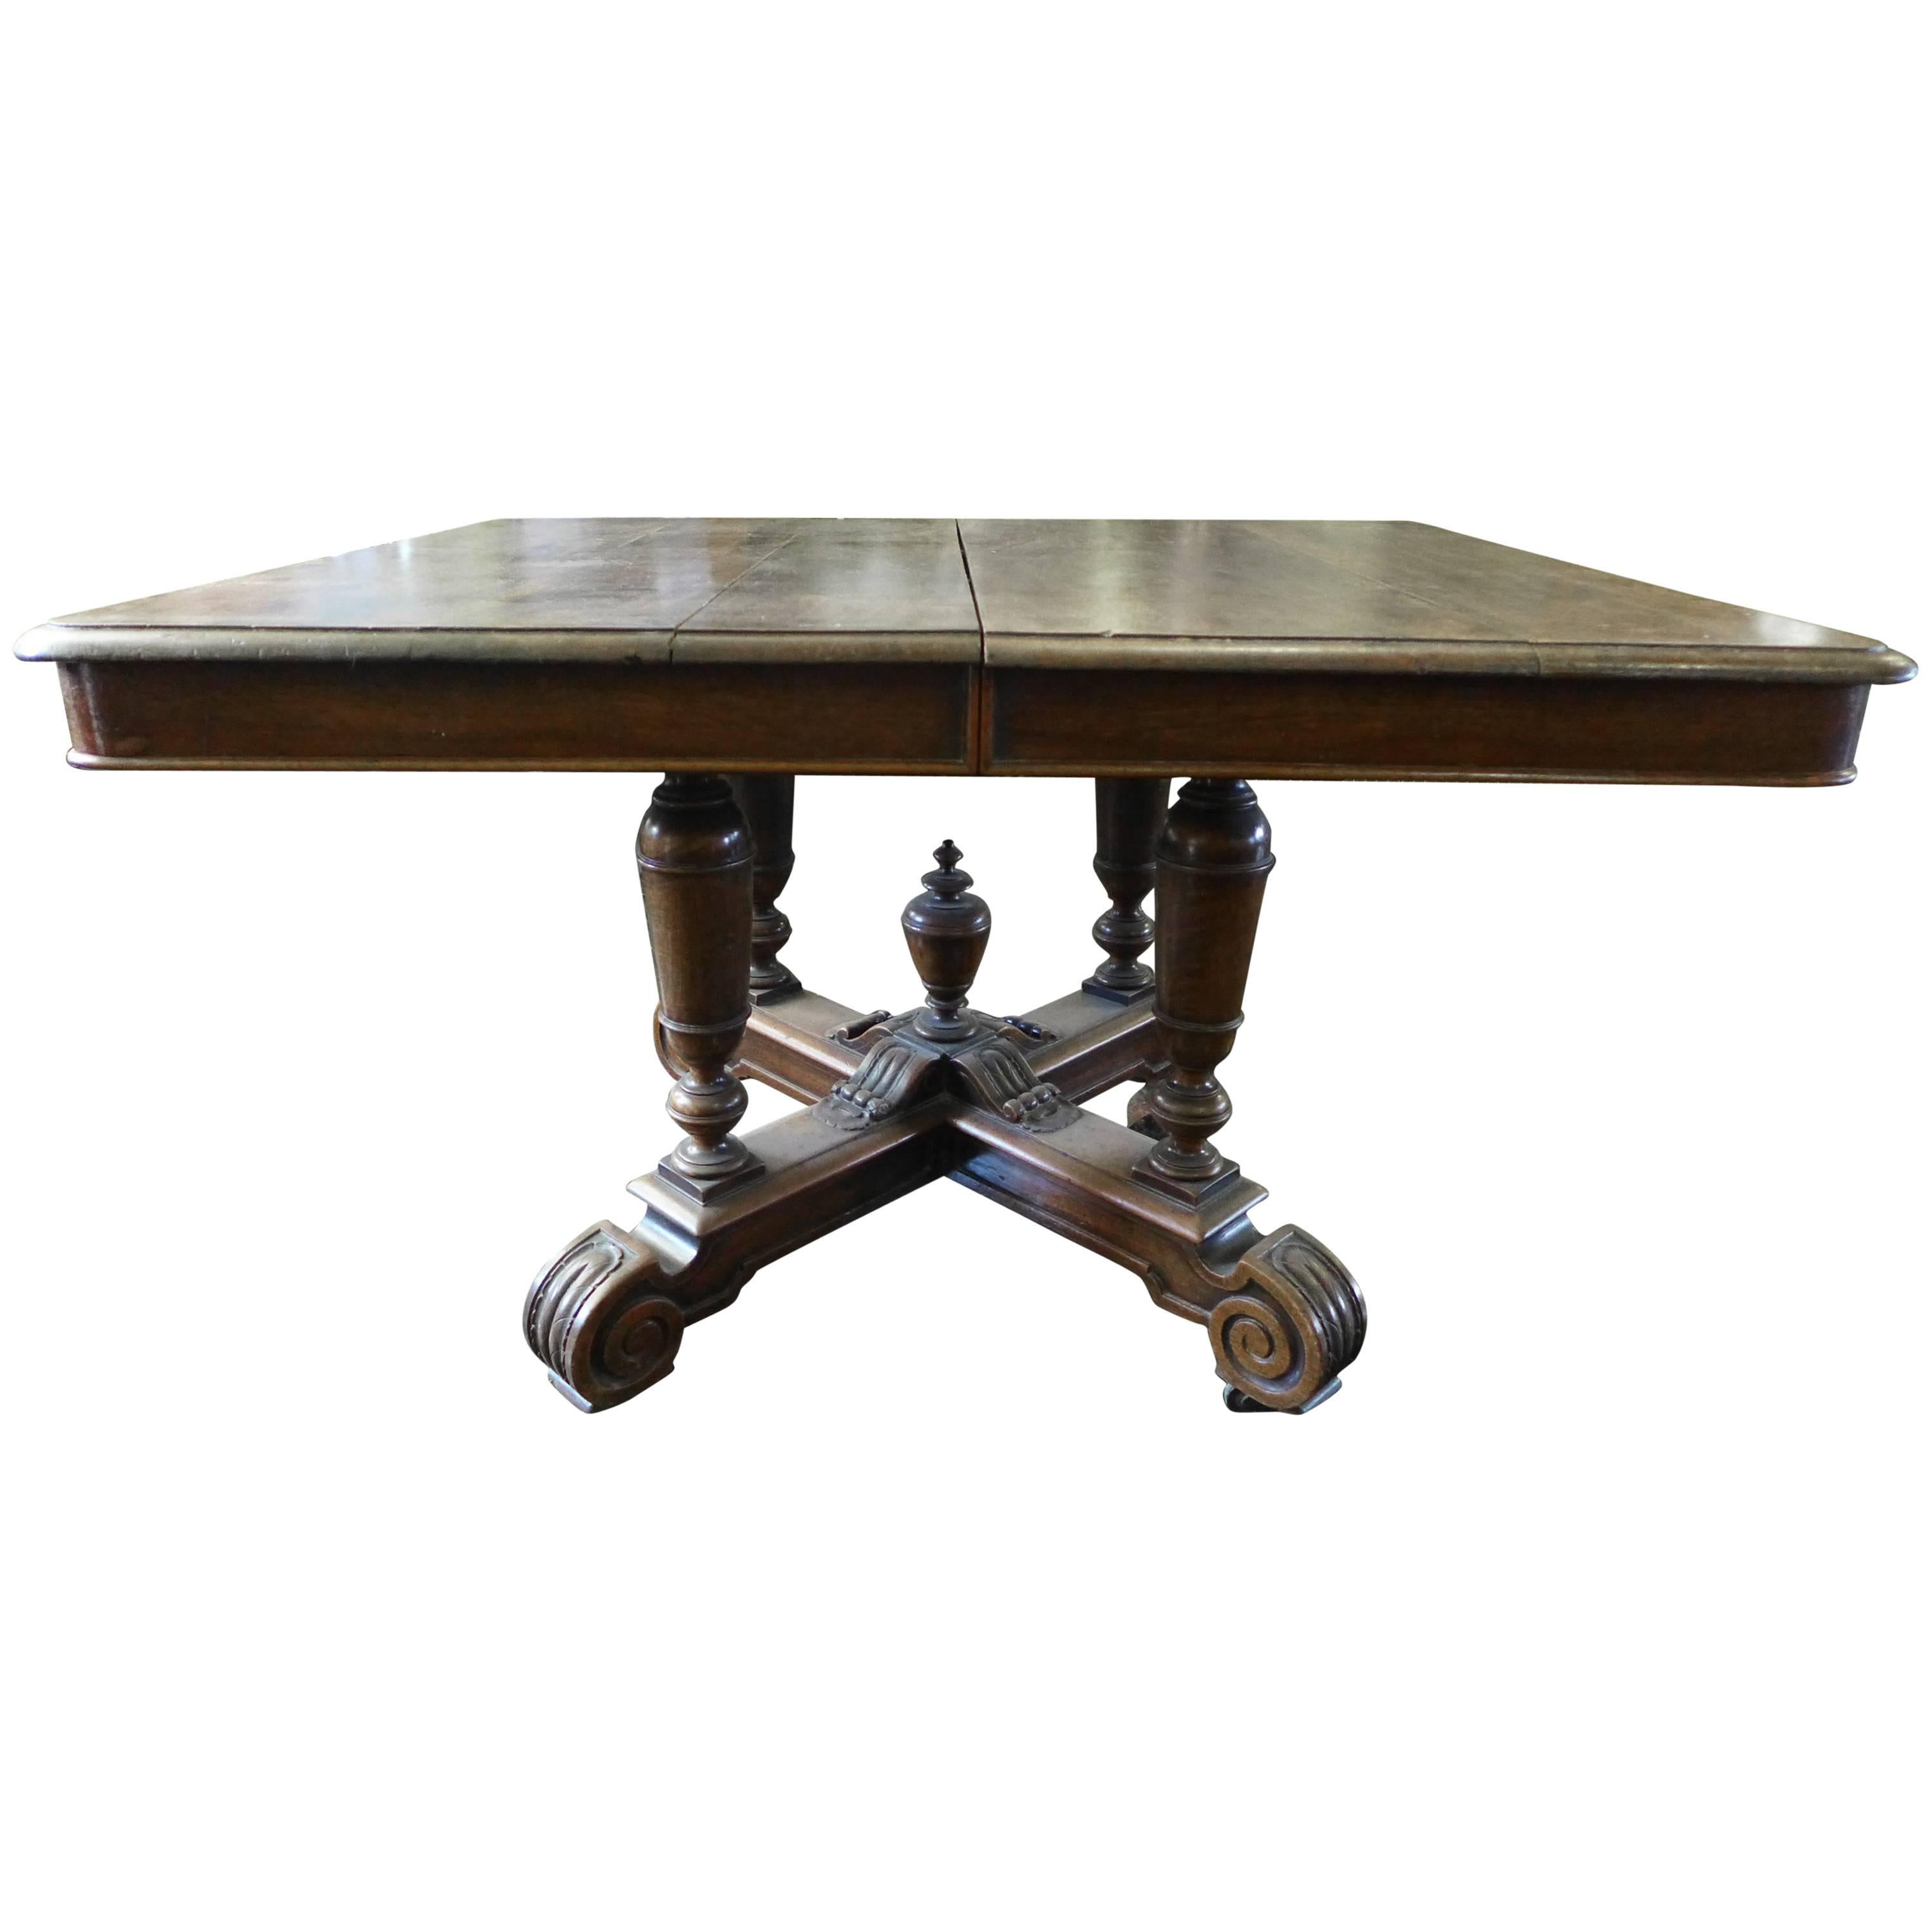 Ancienne table française du 19ème siècle en chêne rectangulaire à rallonge